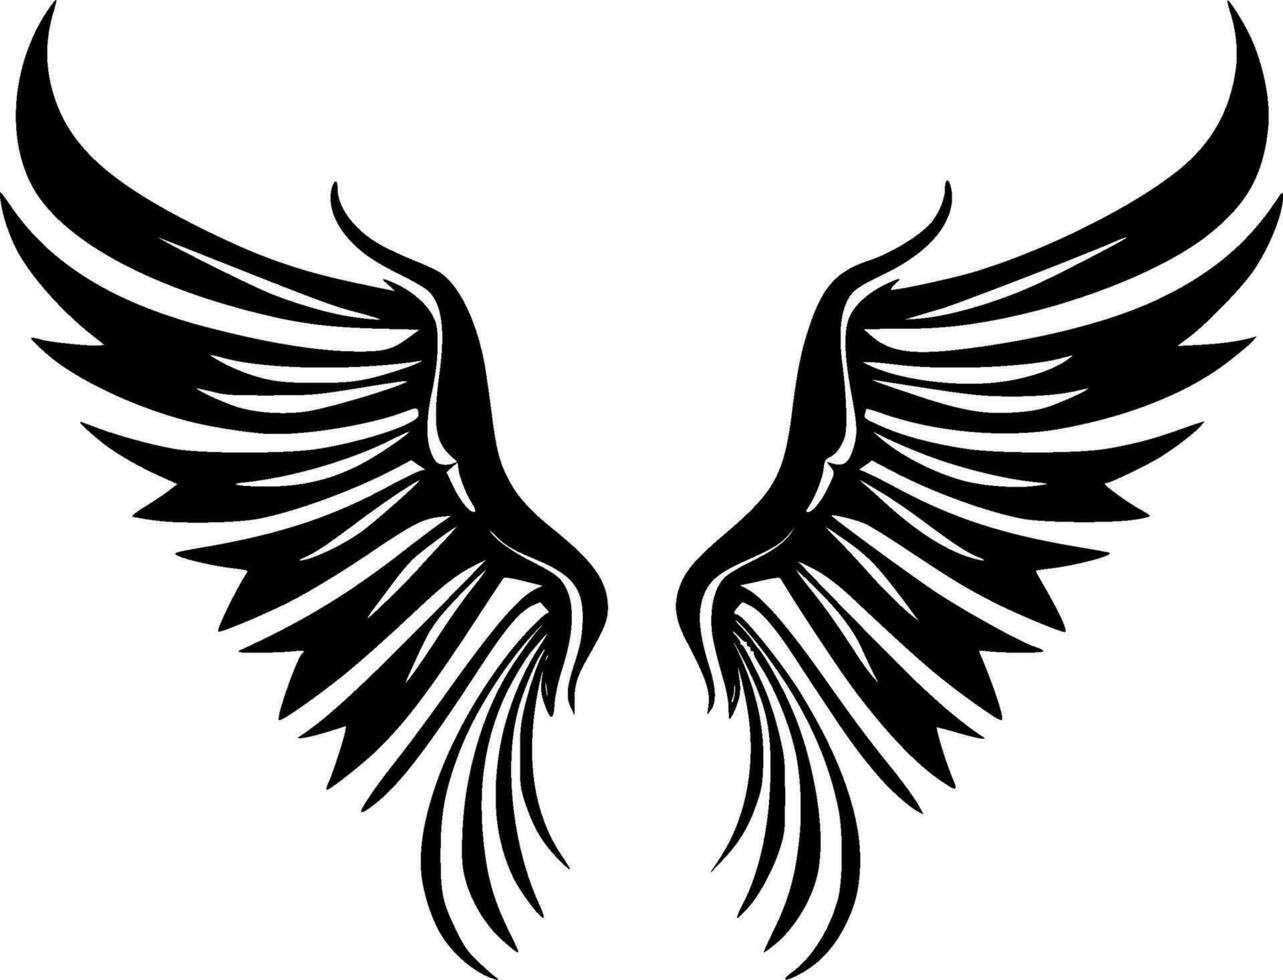 engel Vleugels - hoog kwaliteit vector logo - vector illustratie ideaal voor t-shirt grafisch